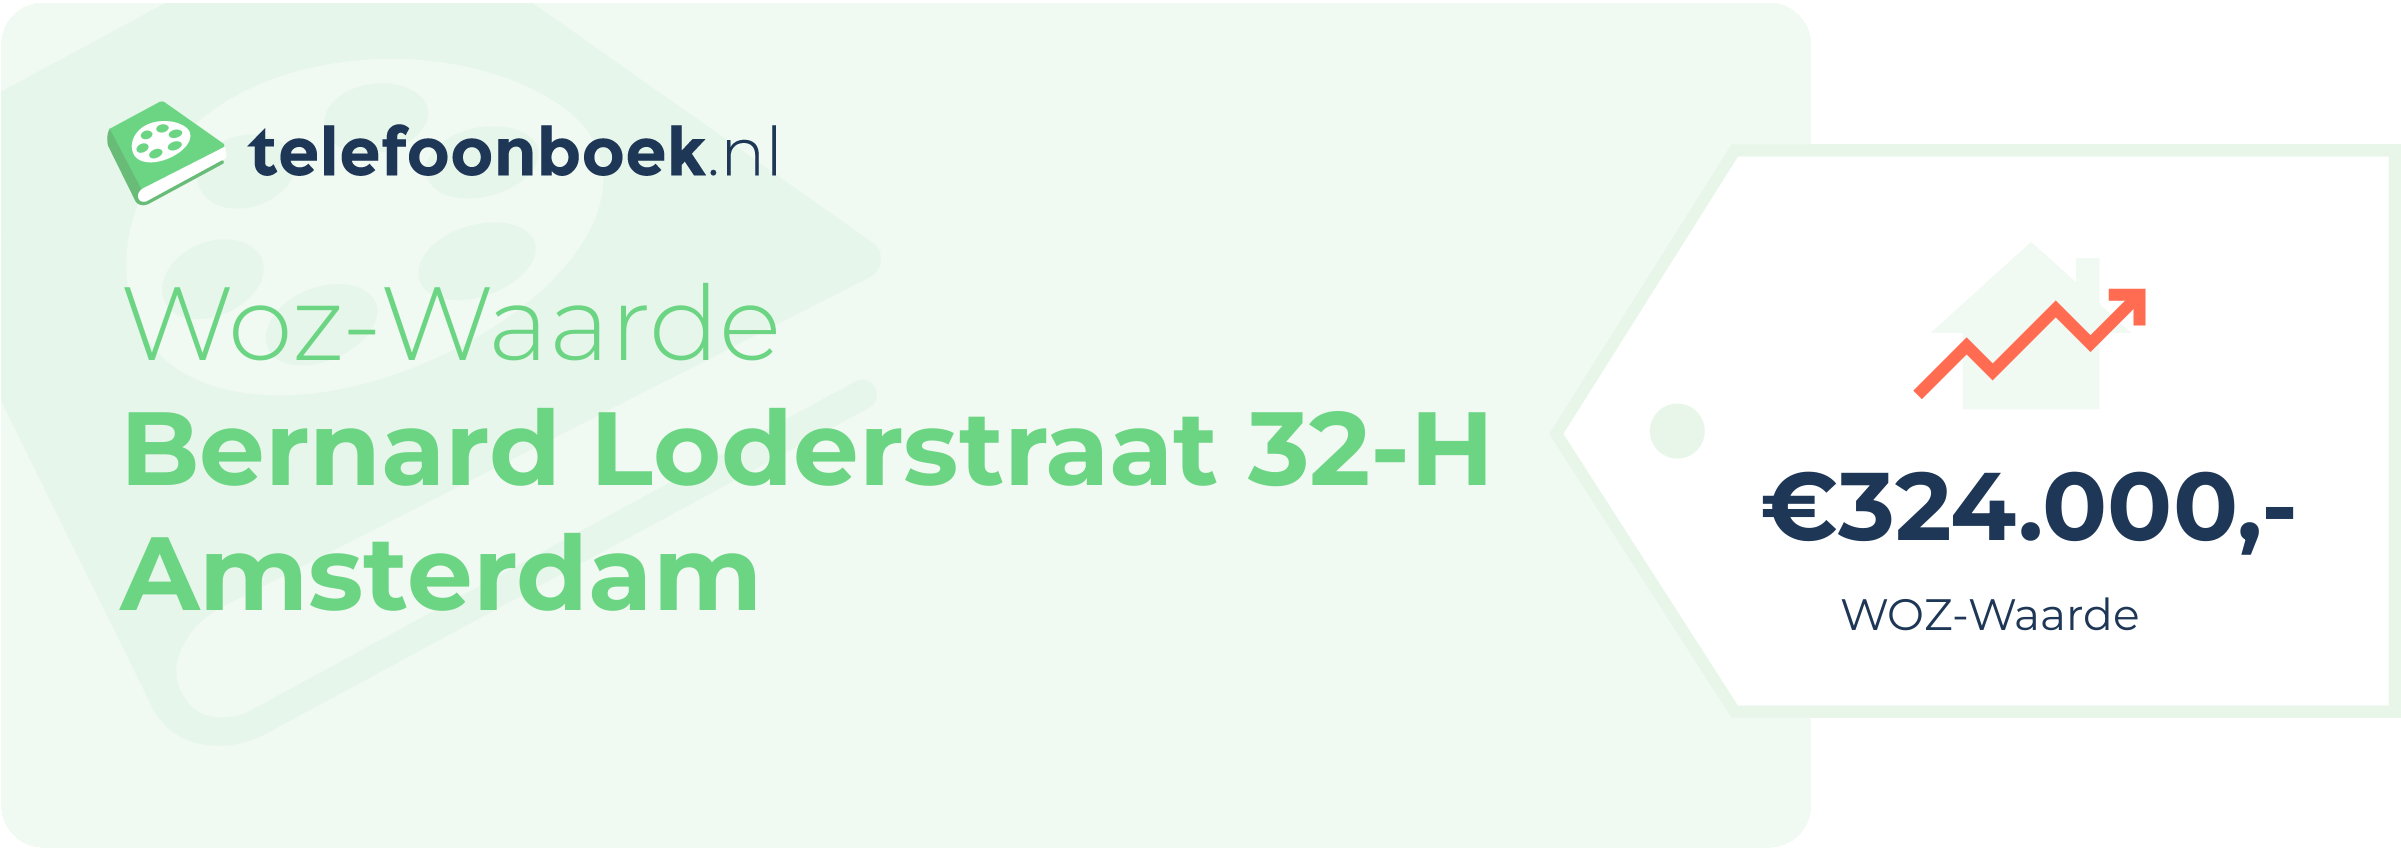 WOZ-waarde Bernard Loderstraat 32-H Amsterdam